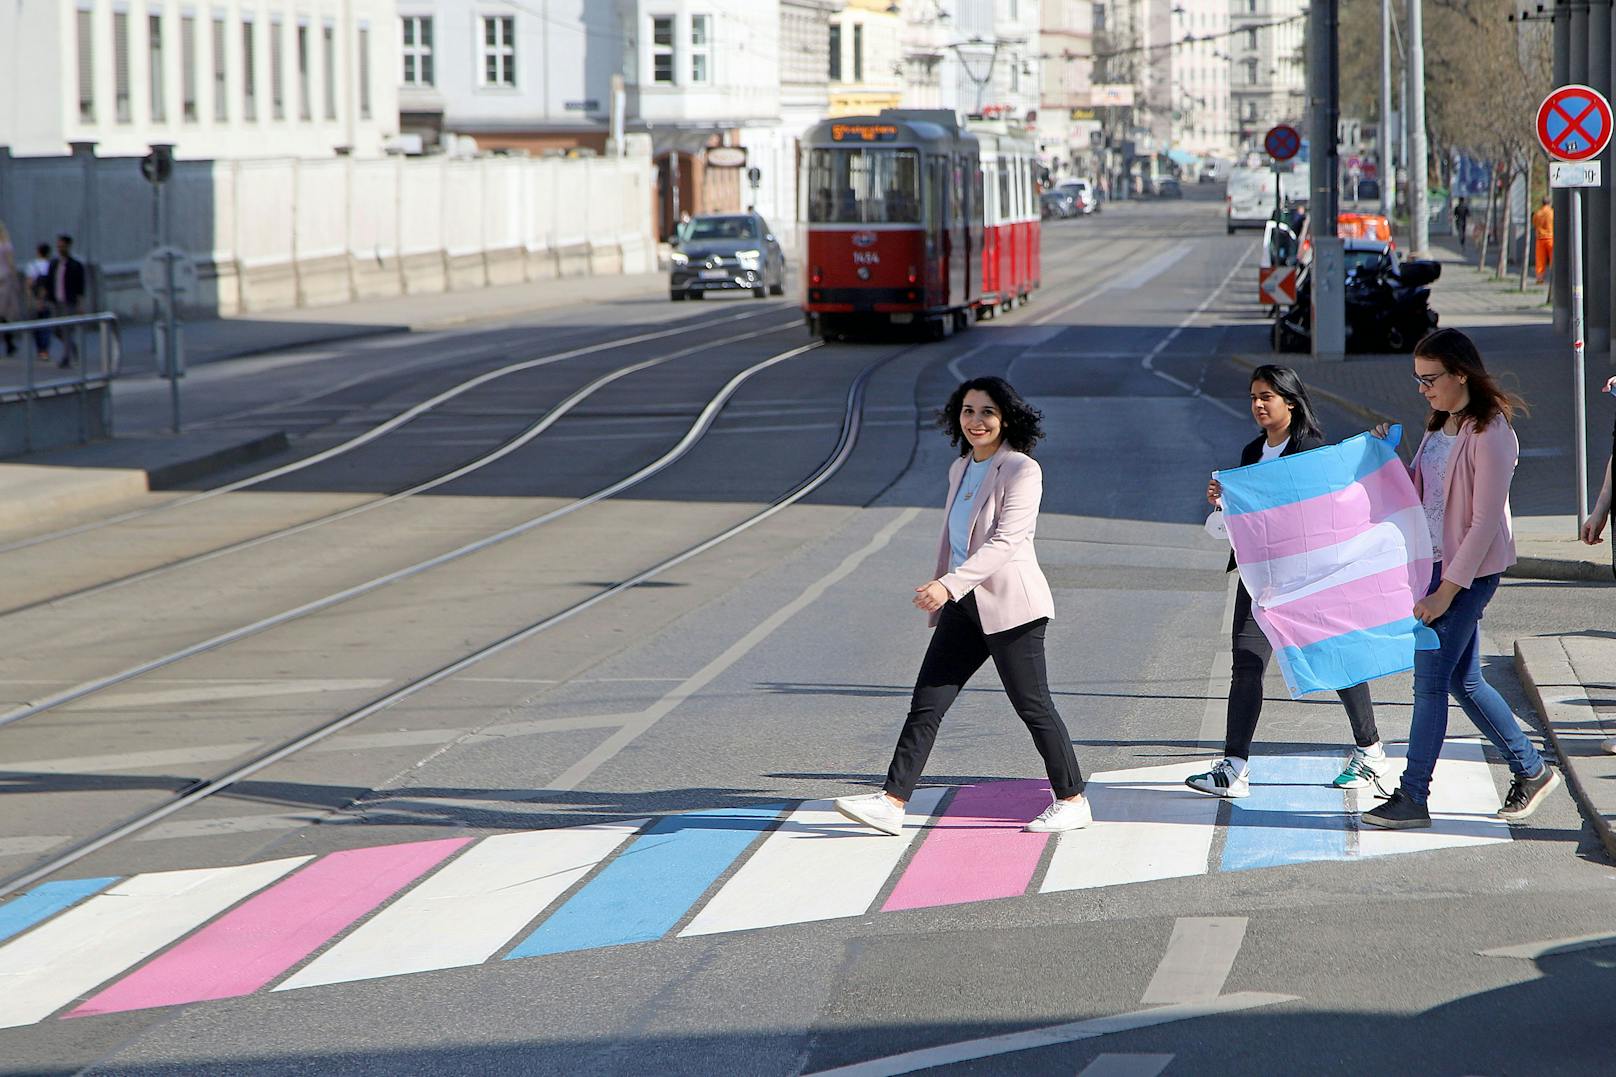 Der bunte Fußgängerübergang soll ein deutlich sichtbares Zeichen für Toleranz und Gleichberechtigung setzen.